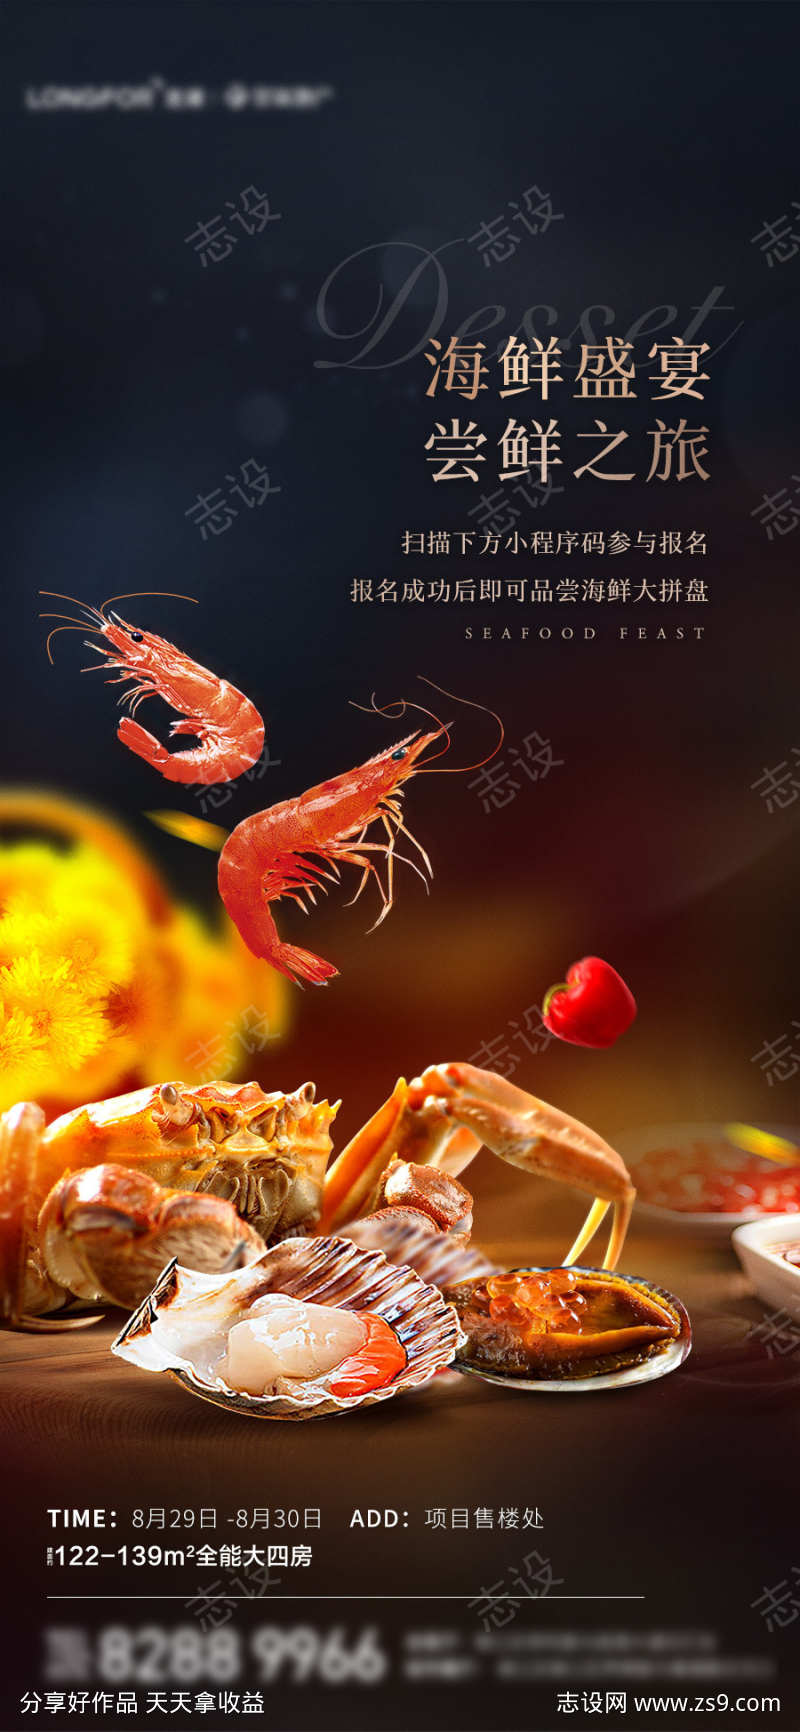 海鲜盛宴活动海报